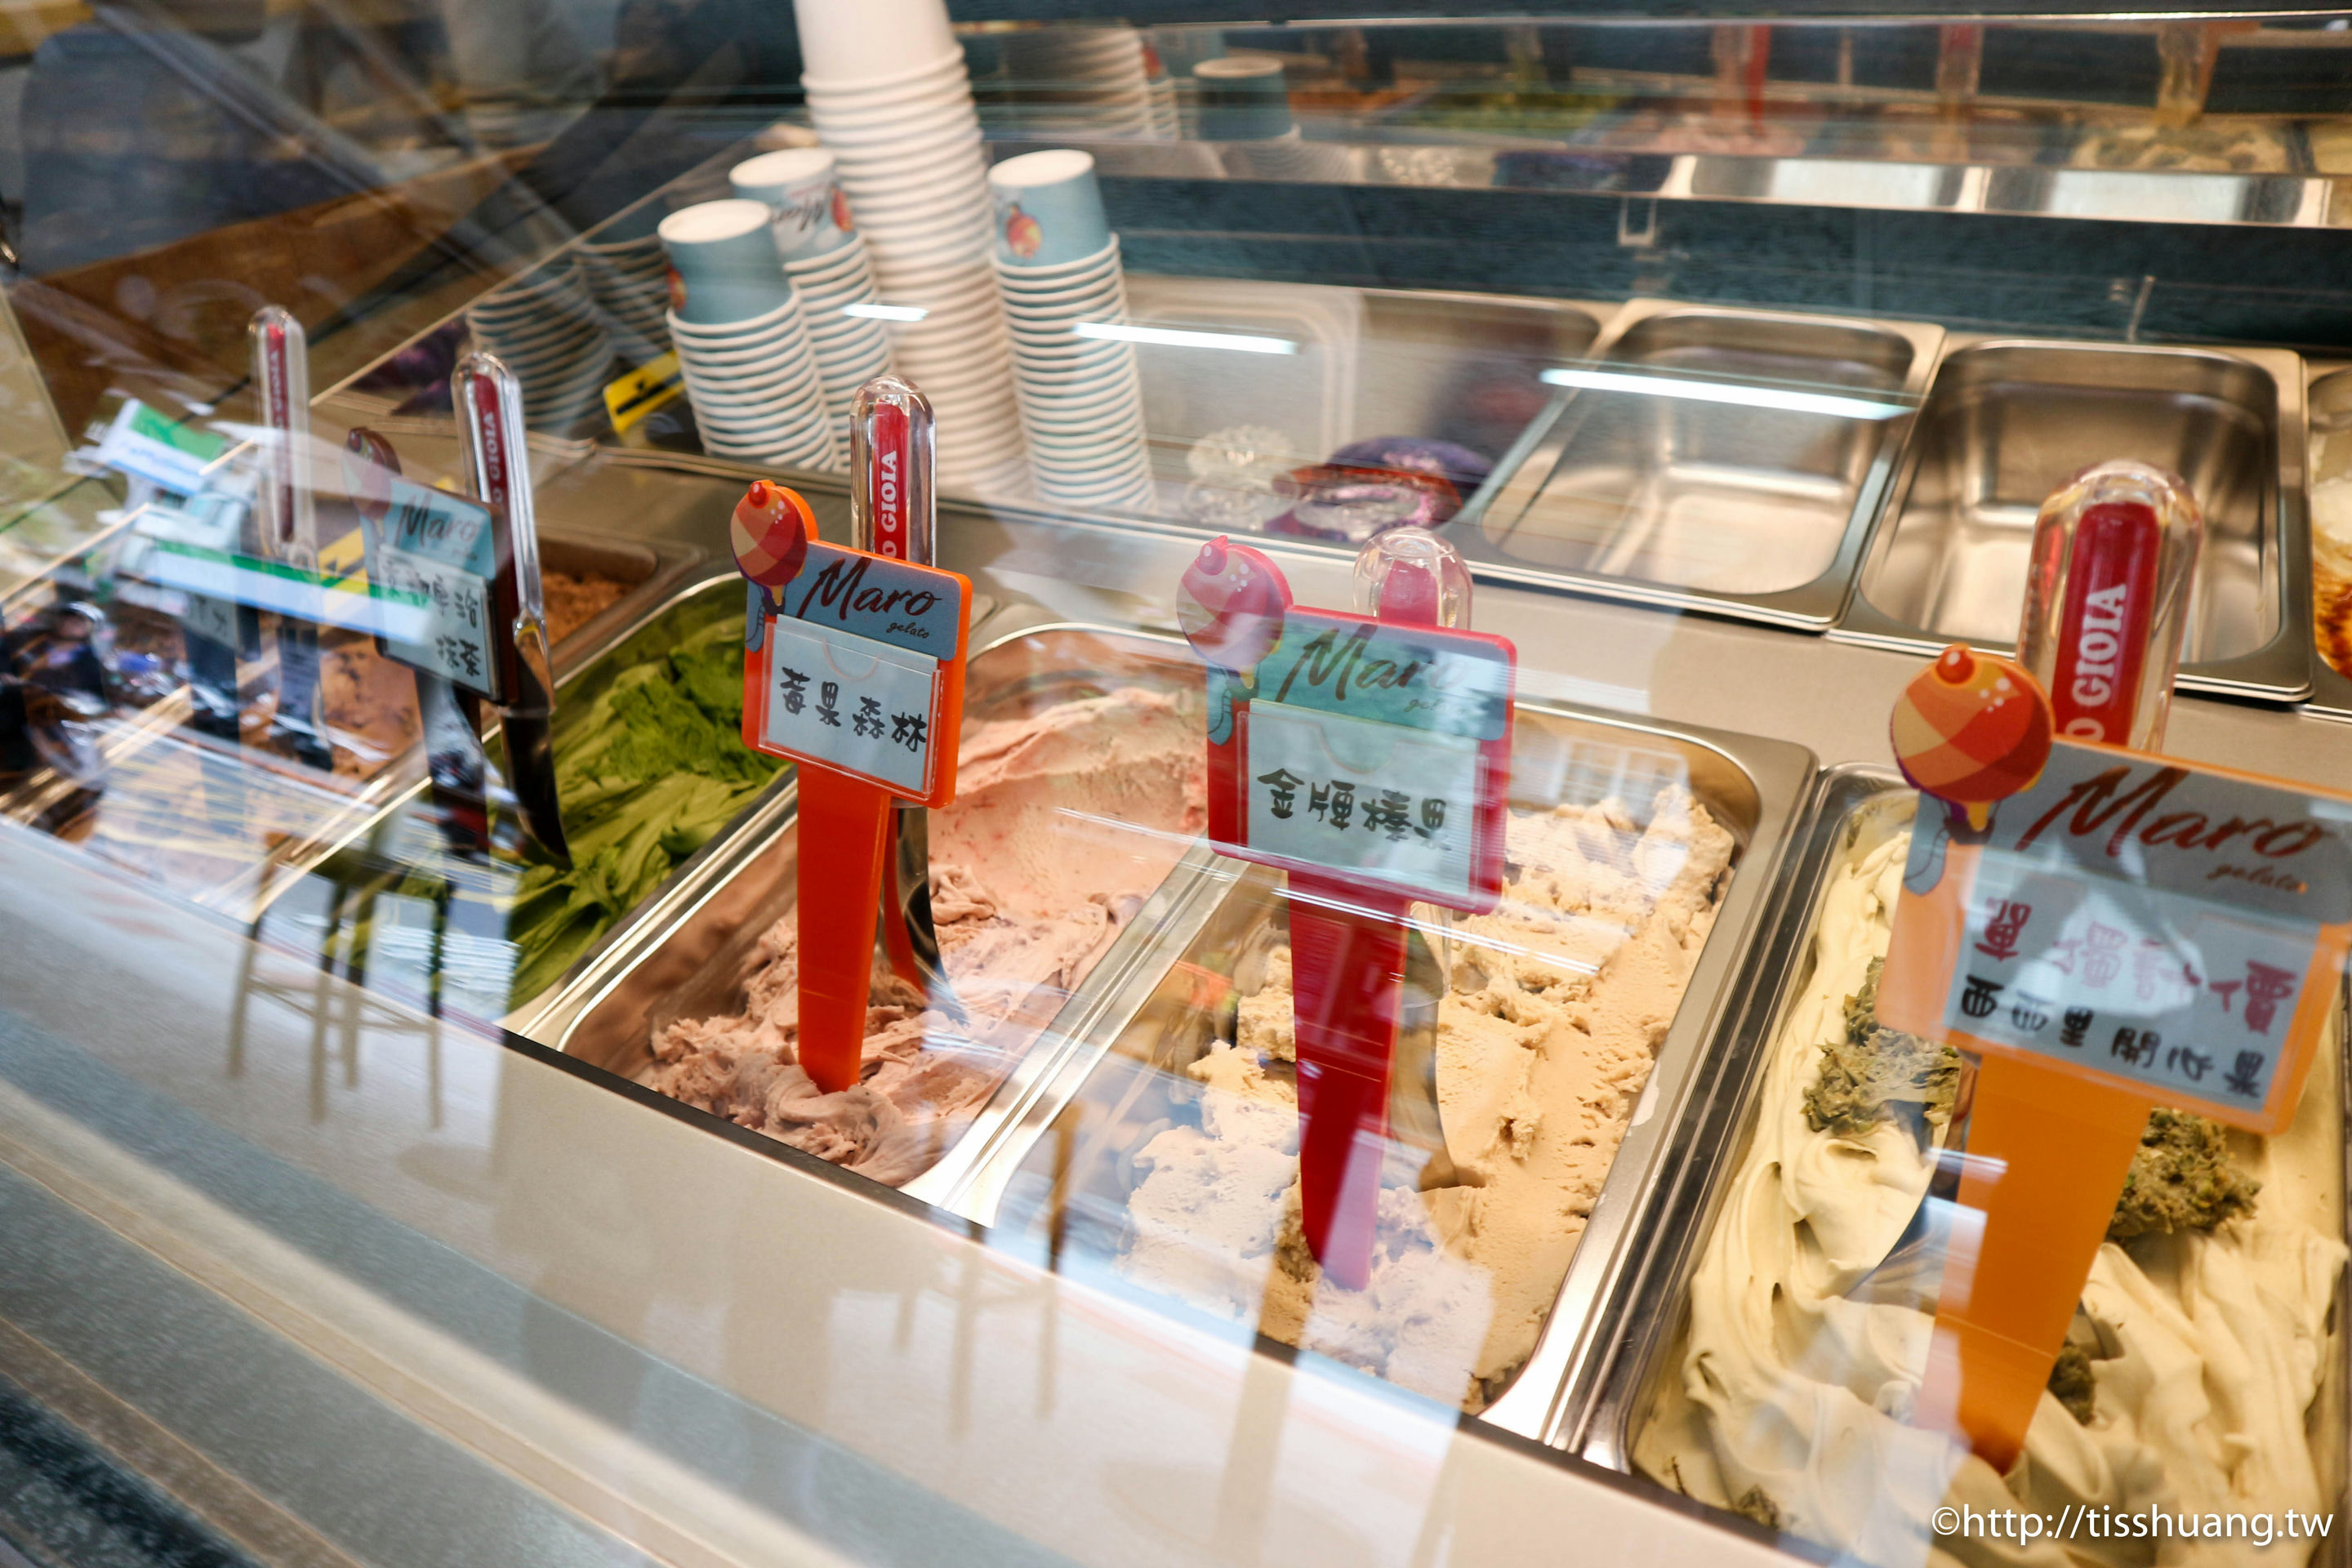 捷運南京復興站美食,Maro義式手工冰淇淋,台北手工冰淇淋,台北好吃冰淇淋,台北冰淇淋推薦,不填加反式脂肪的冰淇淋 @TISS玩味食尚